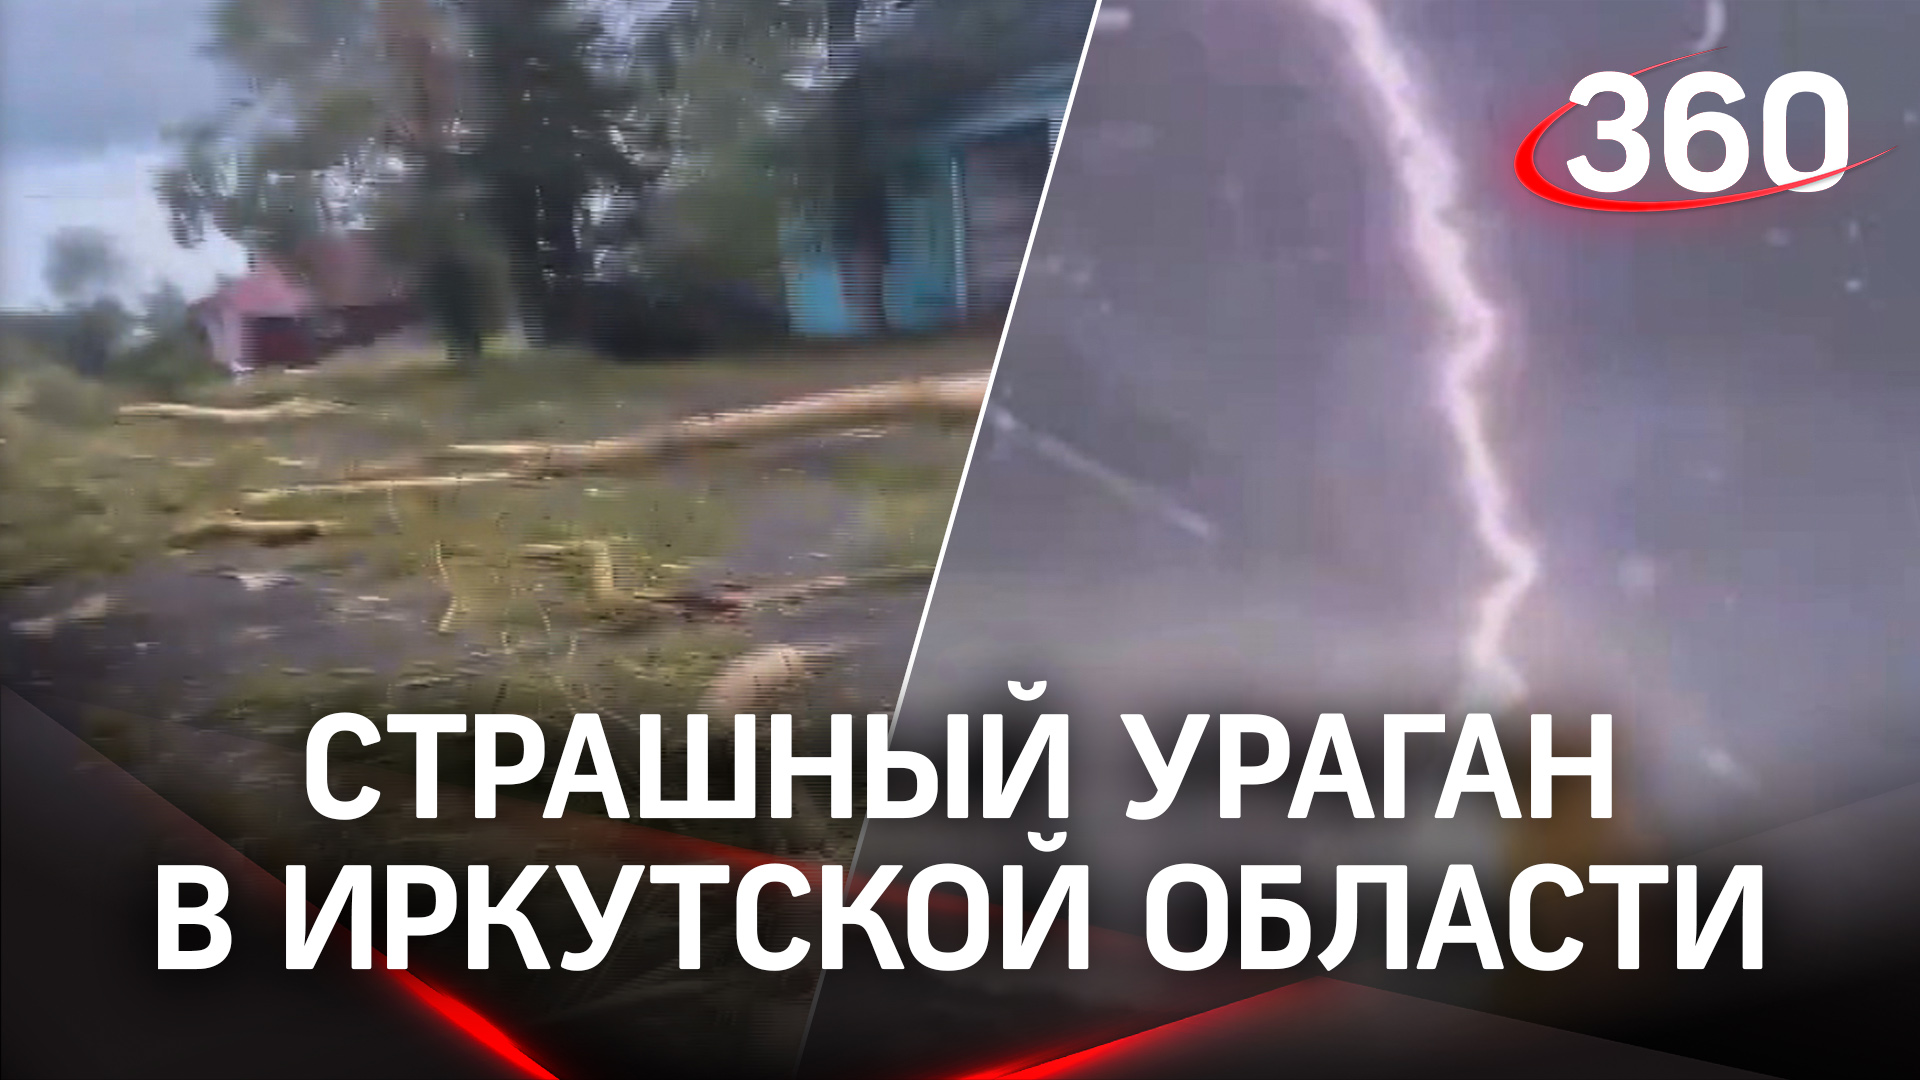 Сносит крыши, метает деревья: ураган в Иркутской области крушит районы